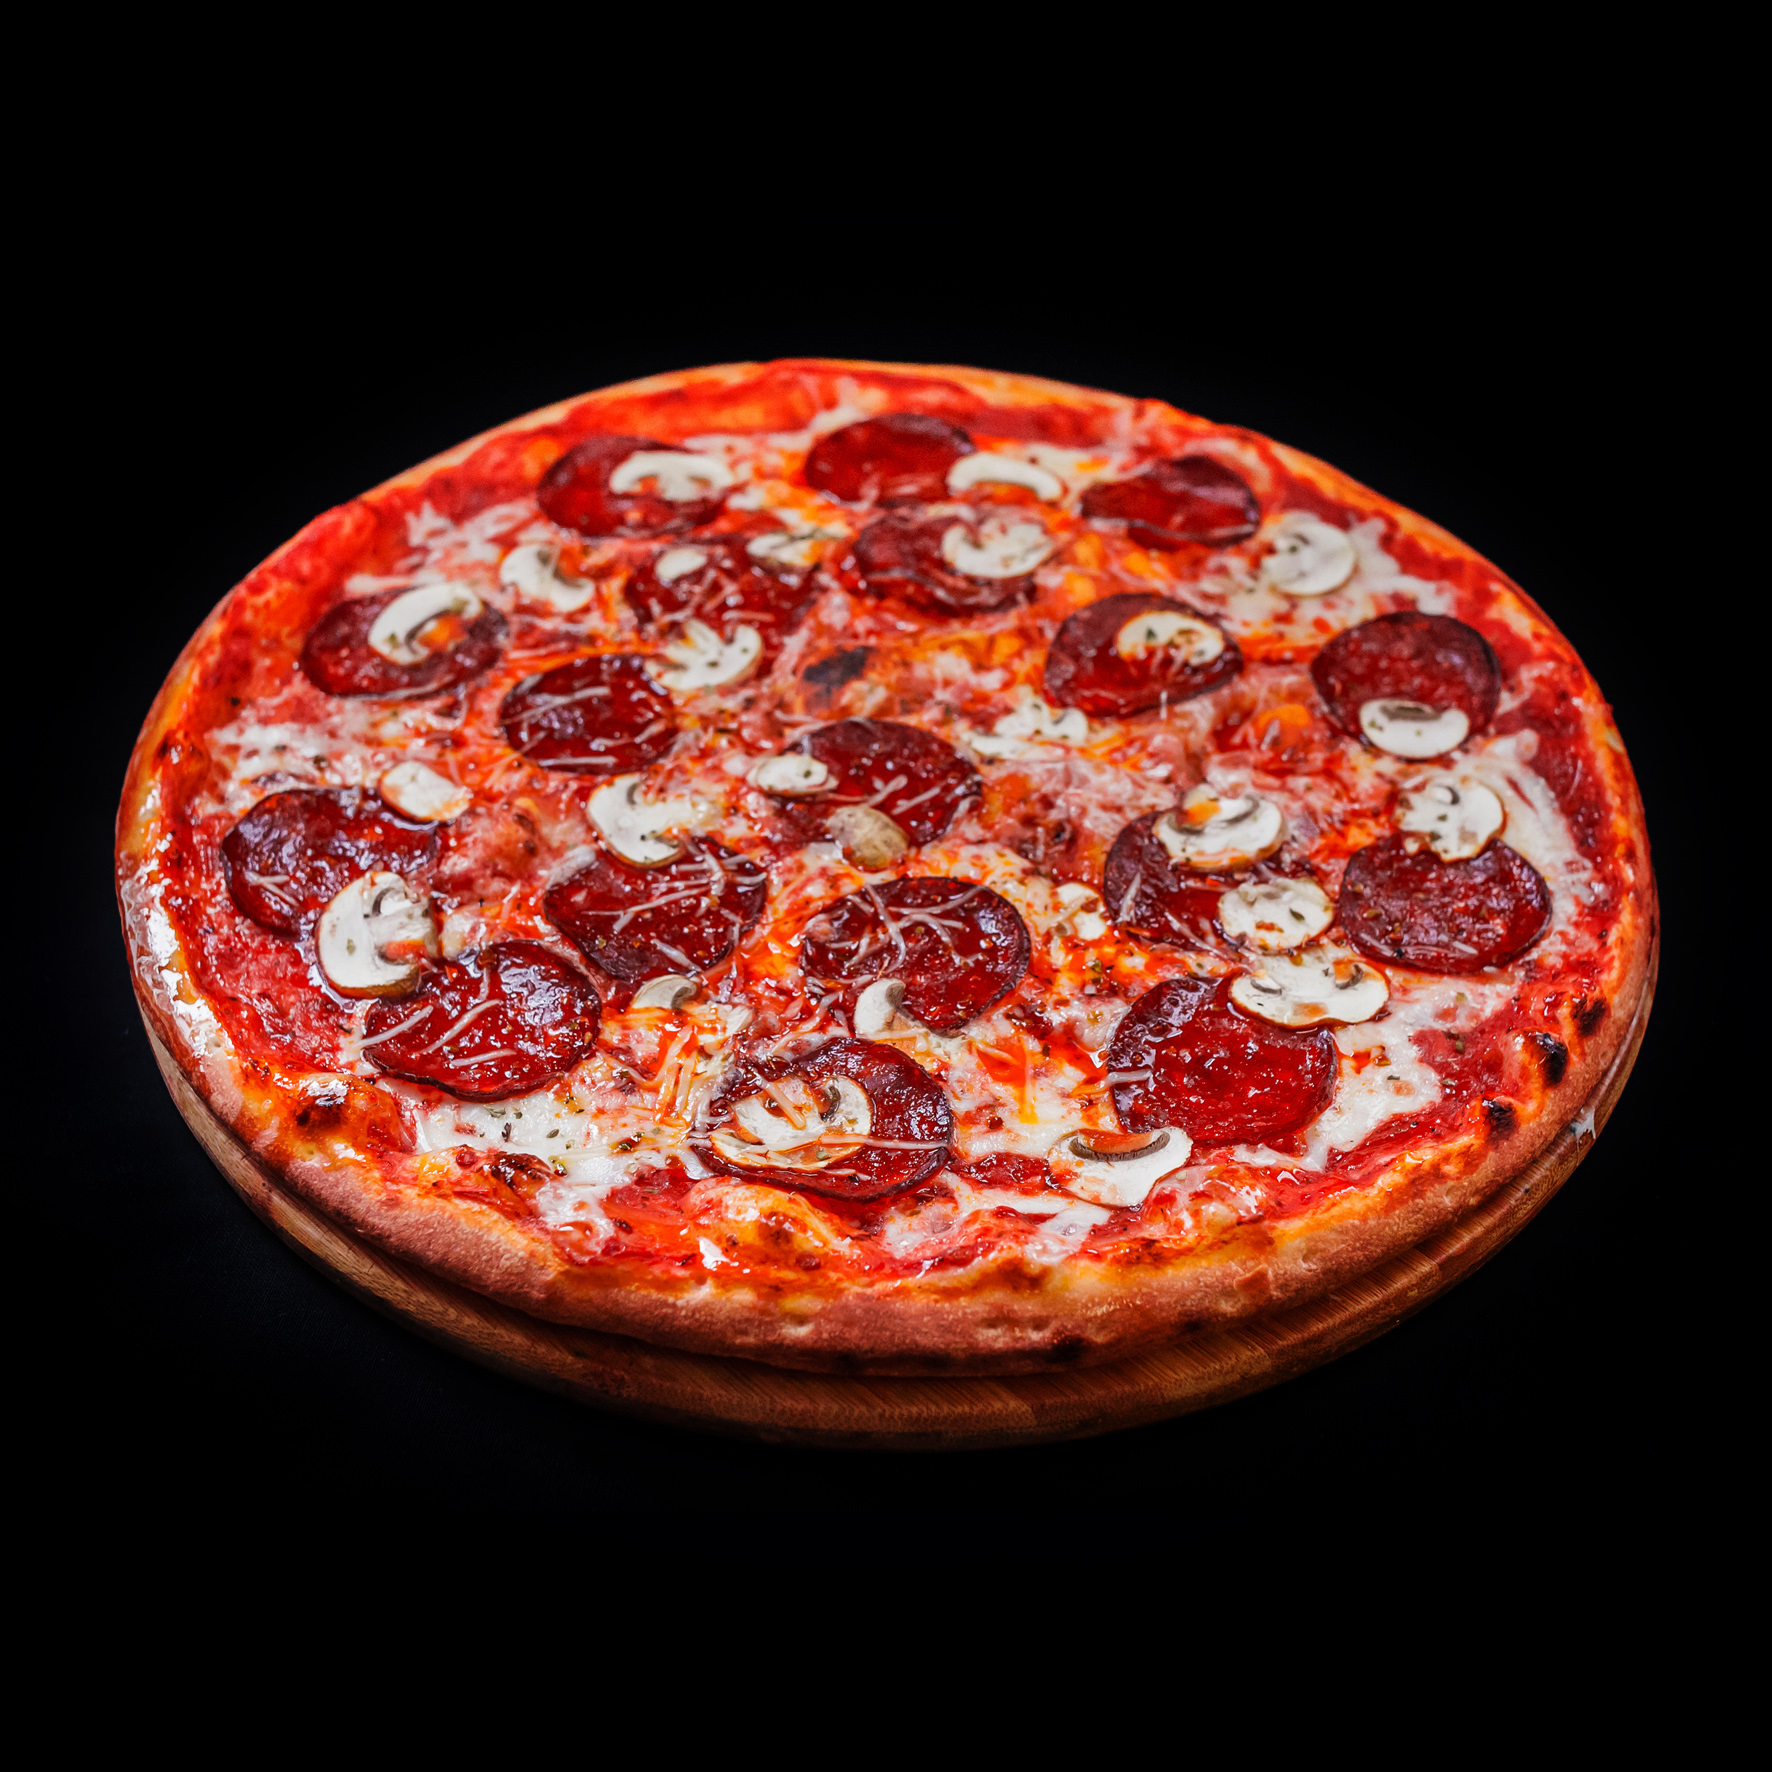 сколько стоит большая пицца пепперони фото 100